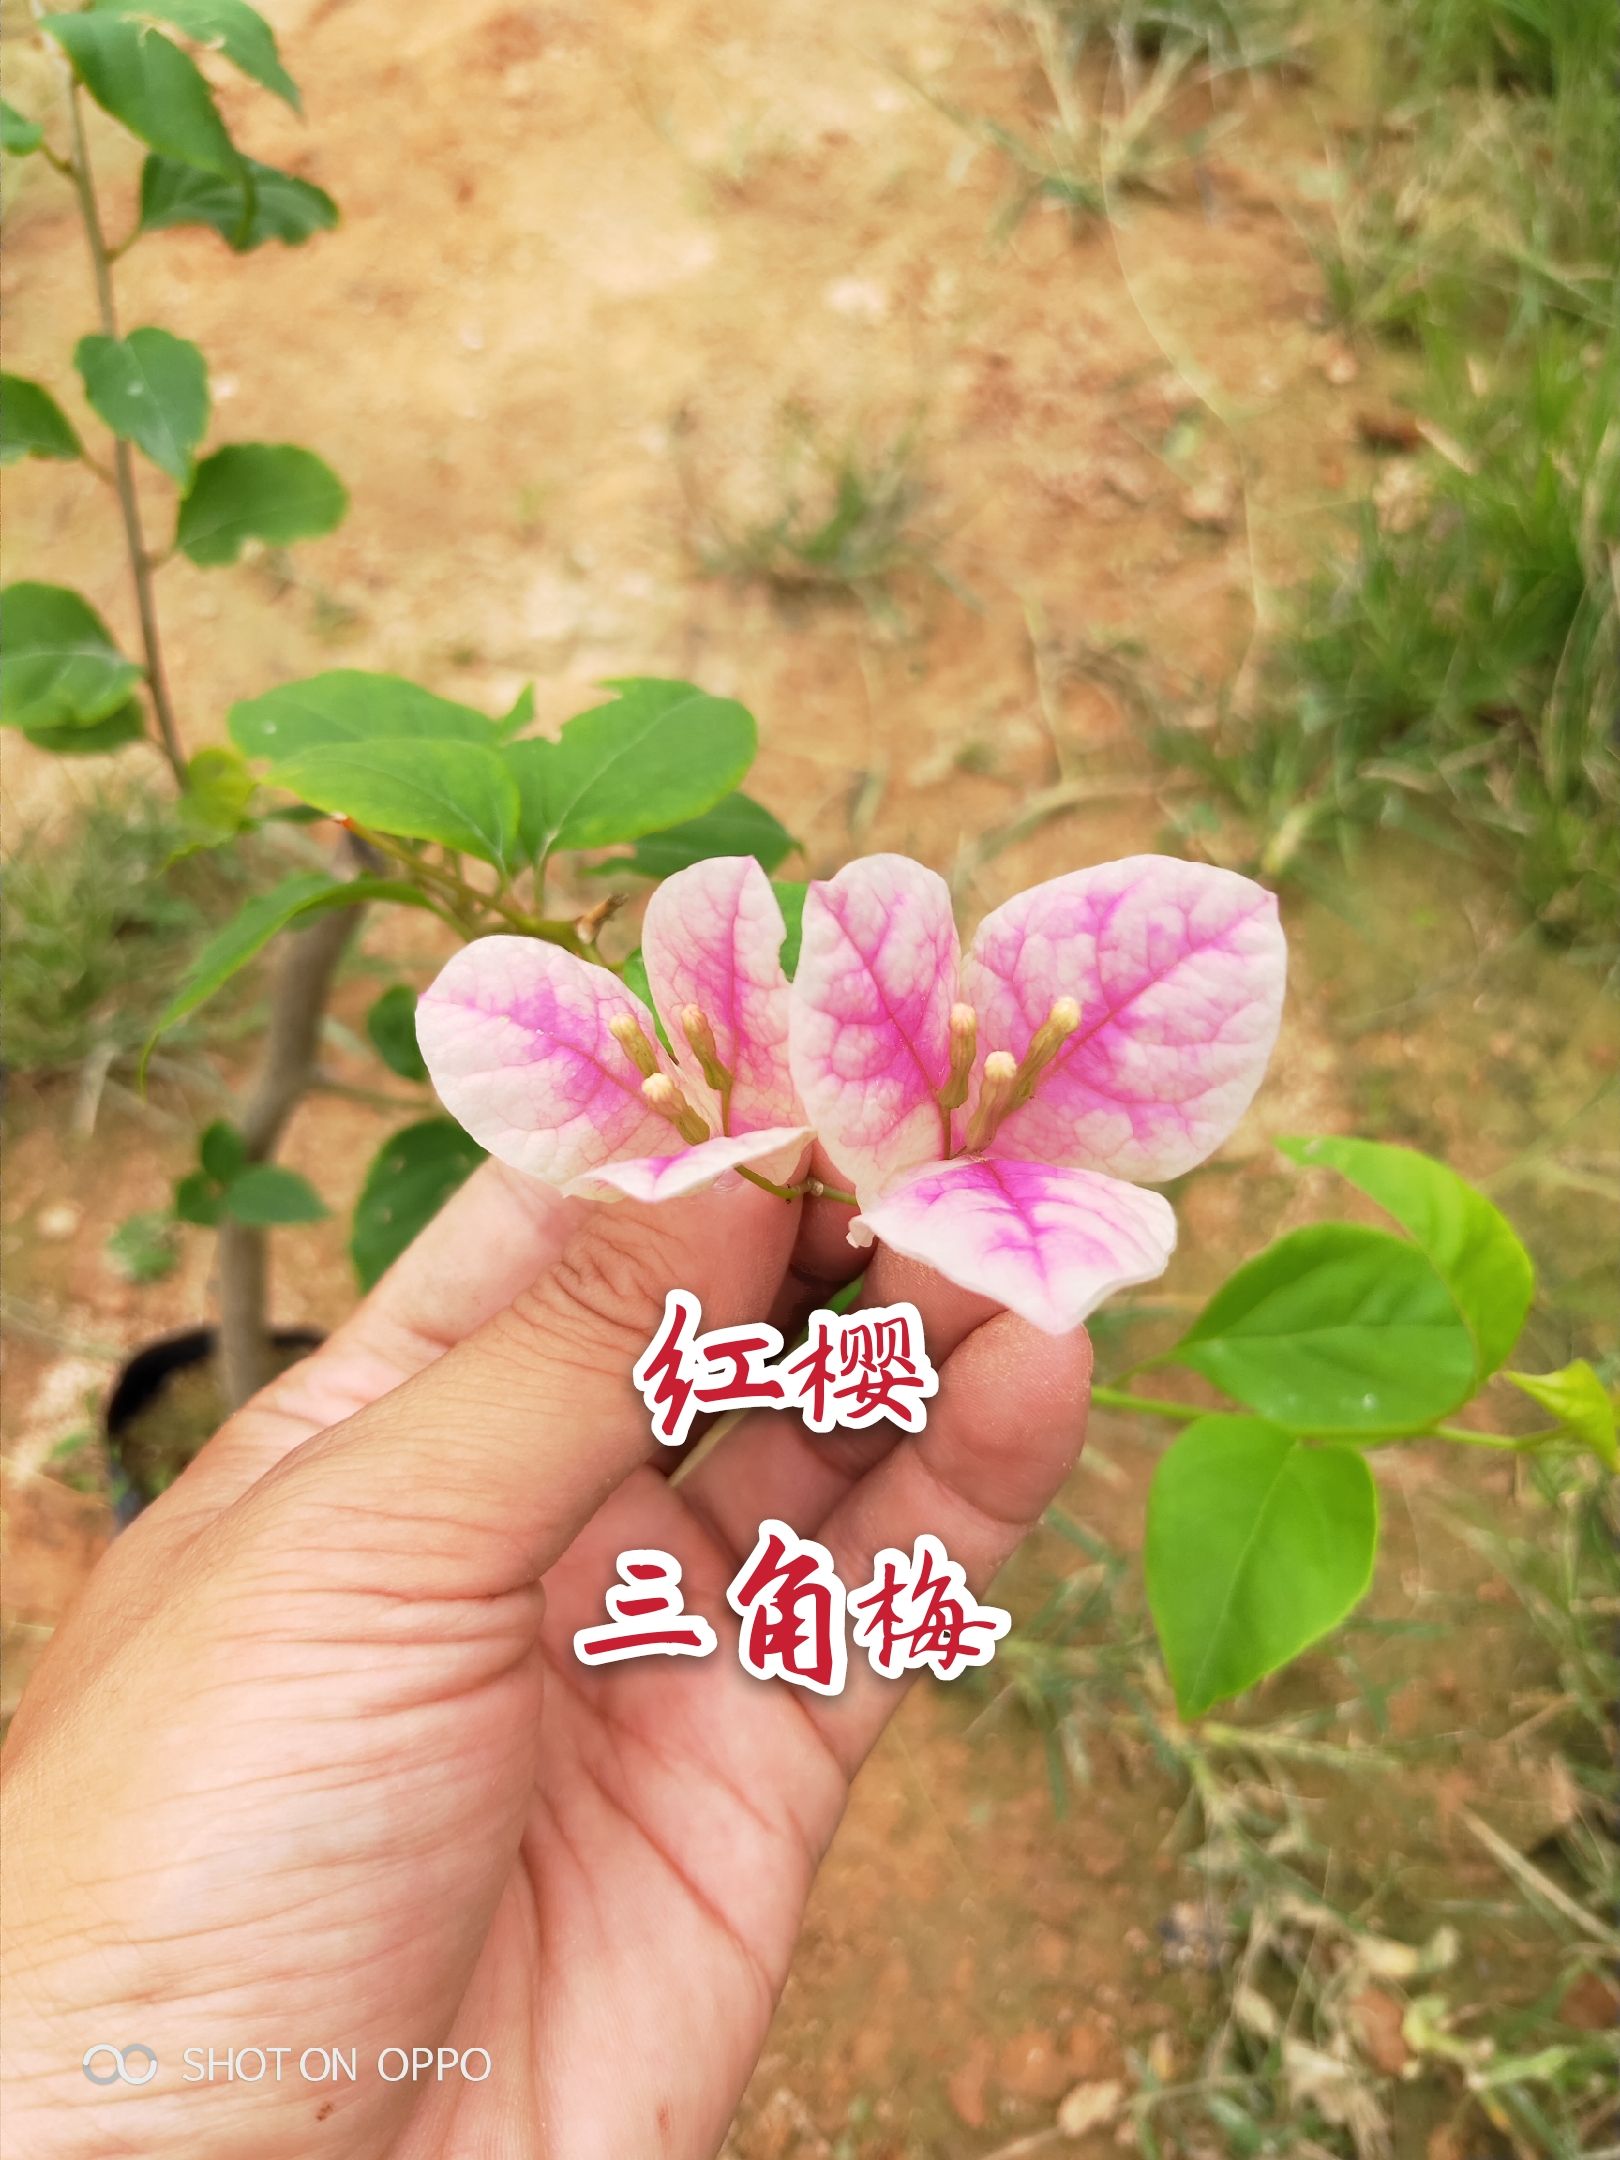 三角梅红樱三角梅主杆20福建漳州三角梅种植基地